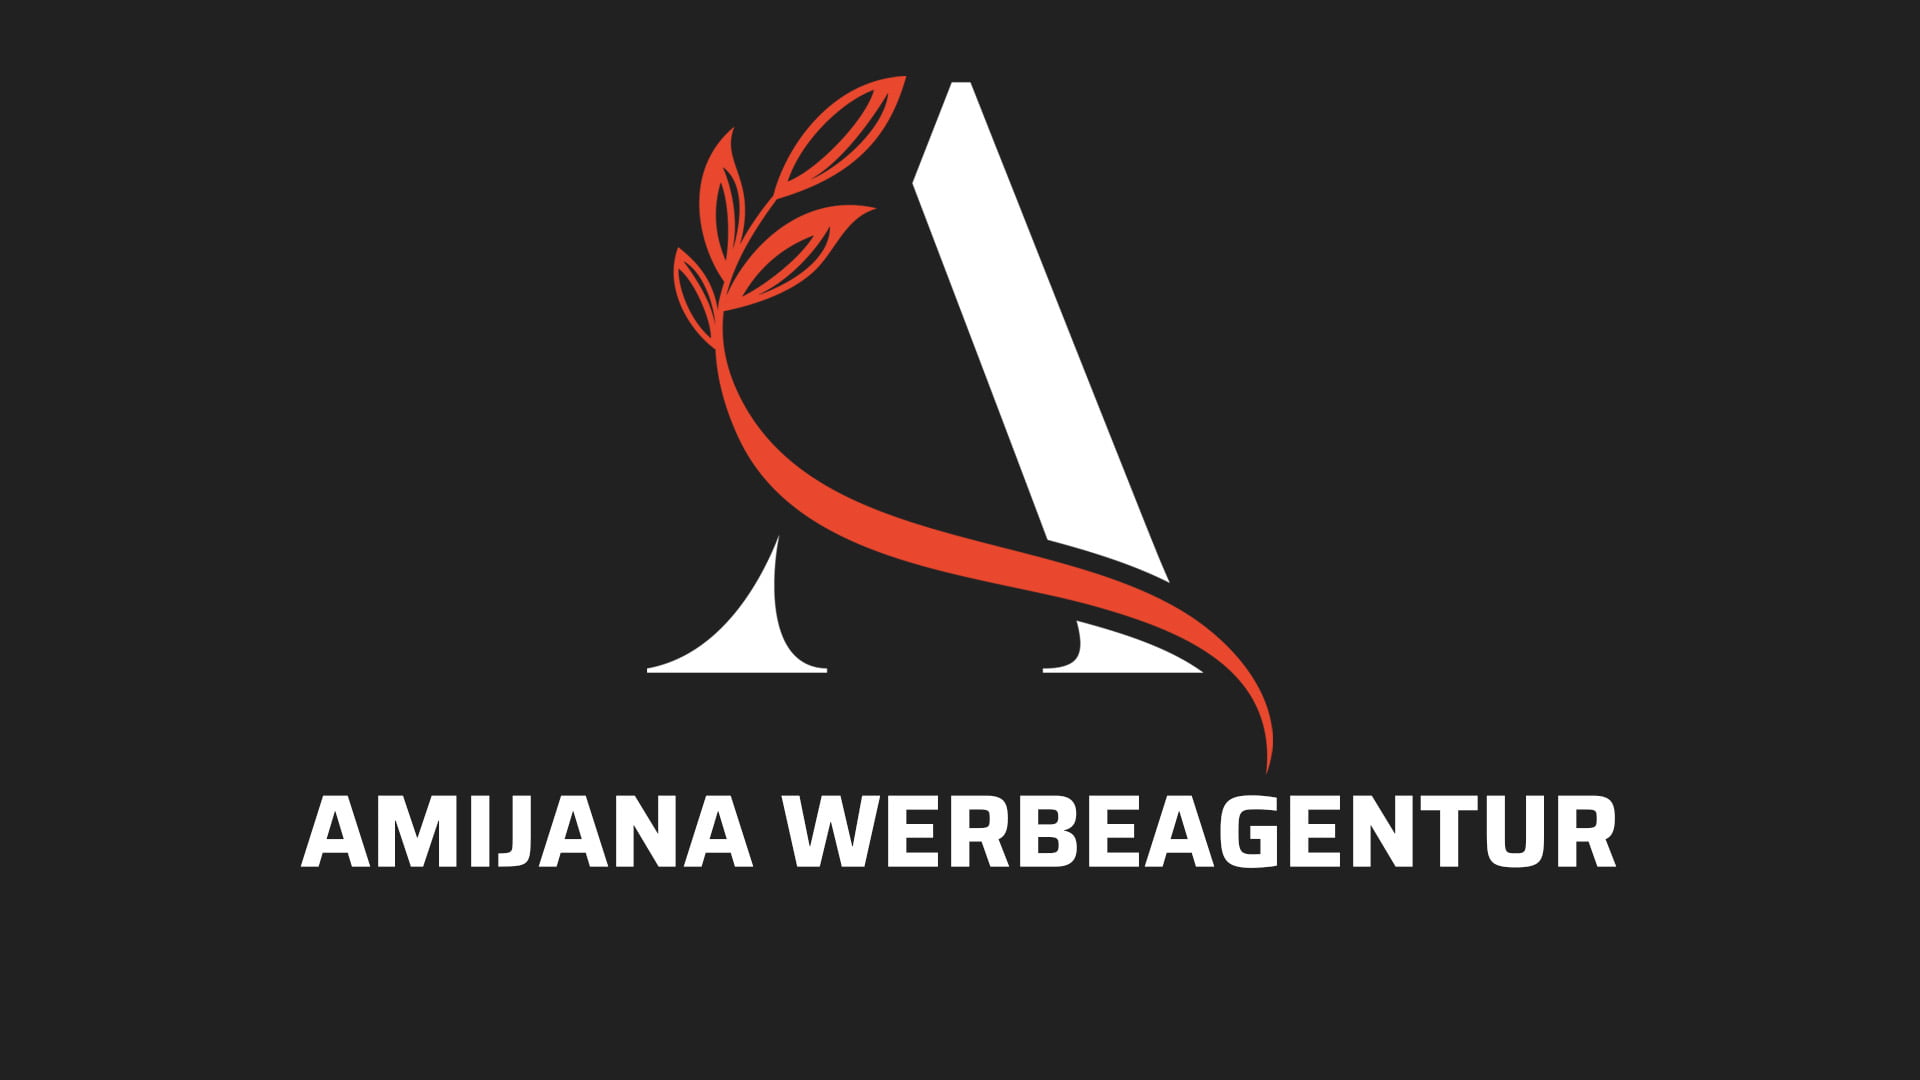 Amijana Werbeagentur Mosbach für Werbeagentur Körner, Weinbergen & Webagentur Körner, Weinbergen